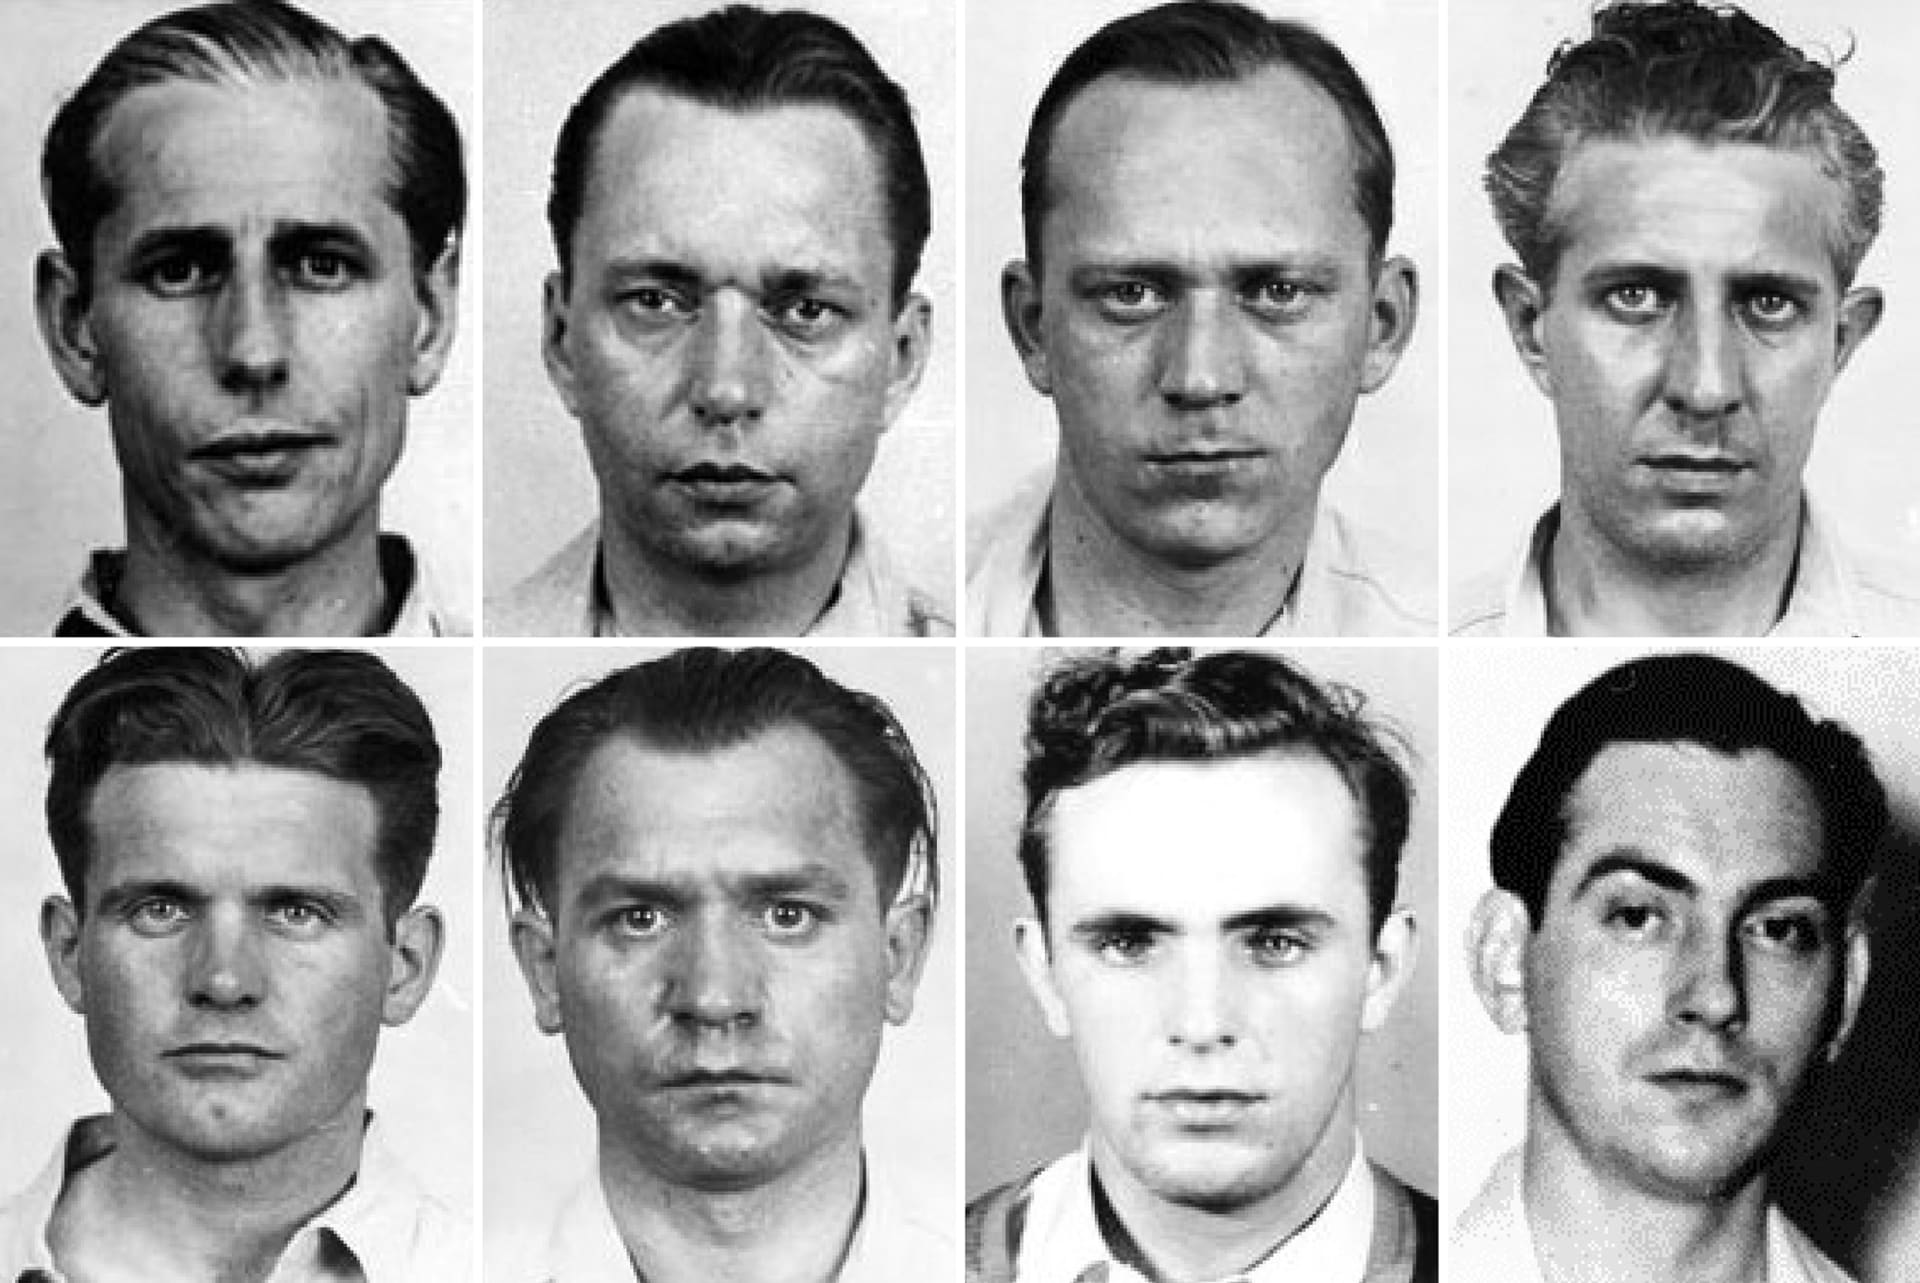 Osm vybraných mužů, kteří měli zatřást americkou ekonomikou. Nahoře první tým ve složení (zleva): Dasch, Burger, Heinck a Quirit, dole druhý tým (zleva): Kerling, Thiel, Haupt a Neubauer.